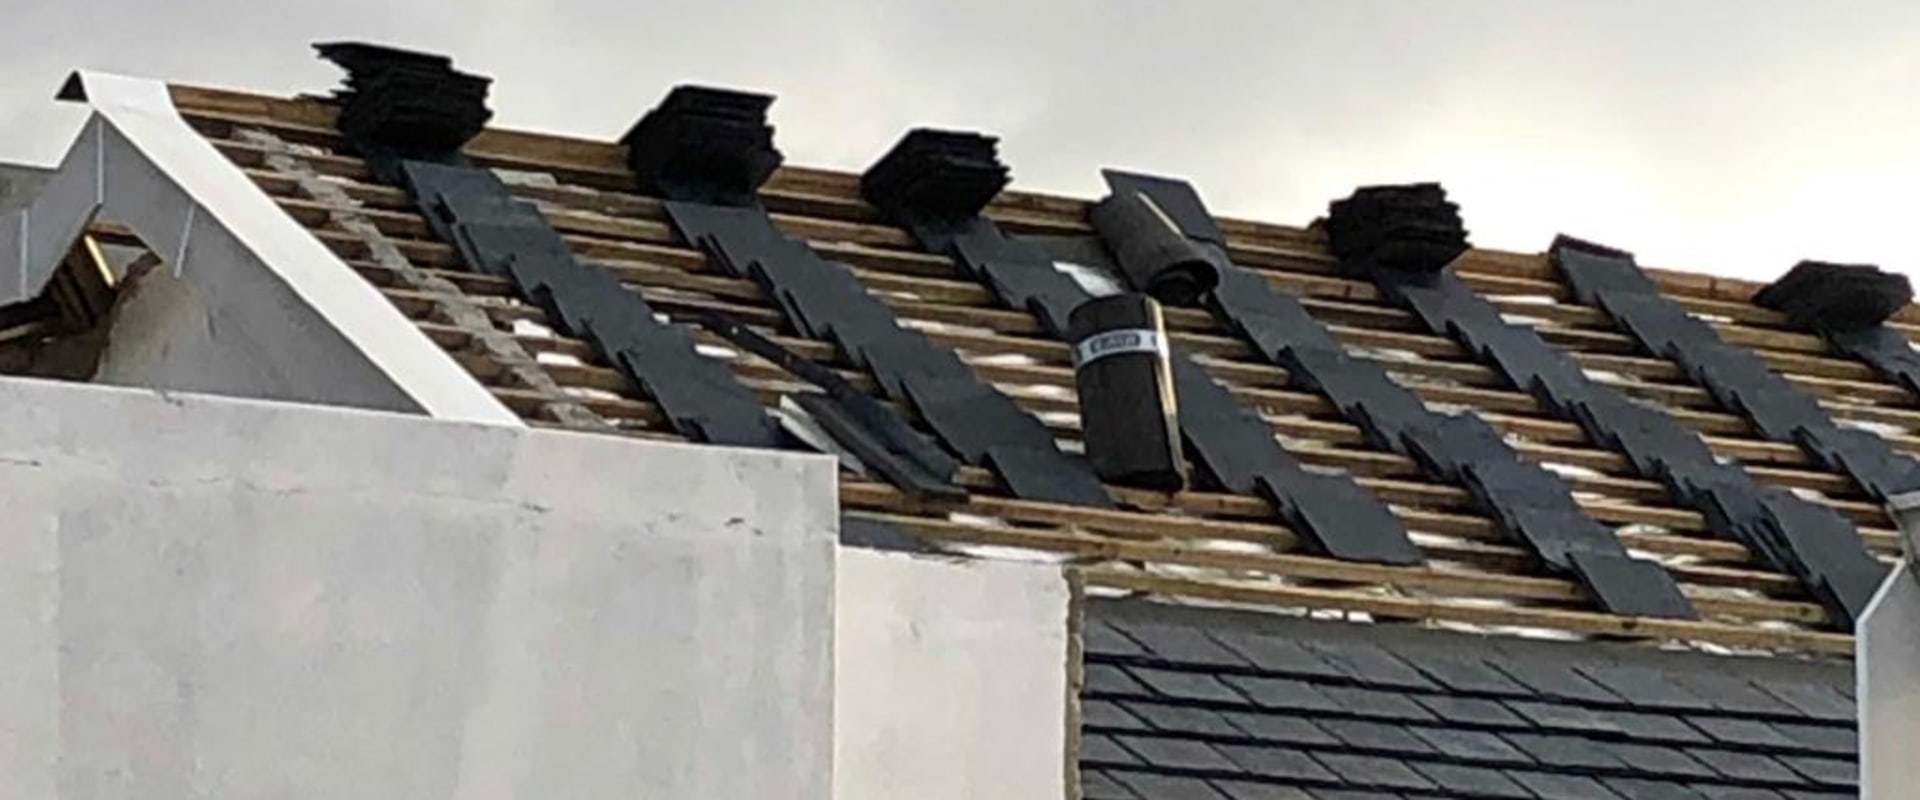 Is roofing underlayment waterproof?